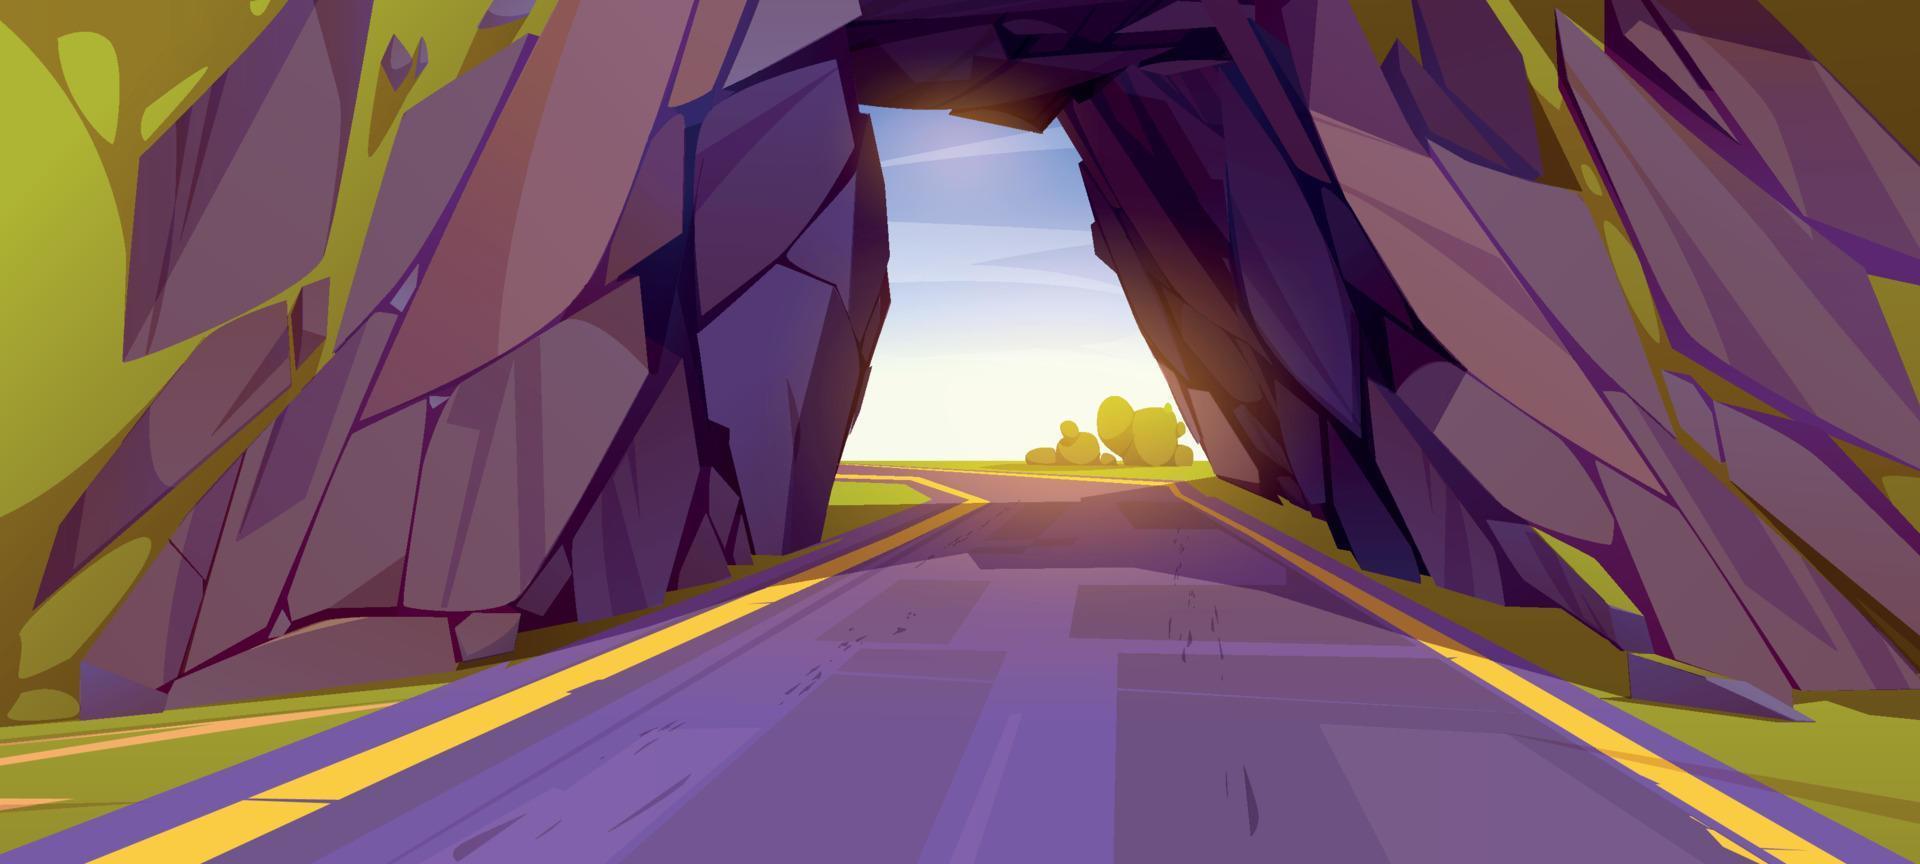 cartone animato strada andando attraverso tunnel nel montagna vettore